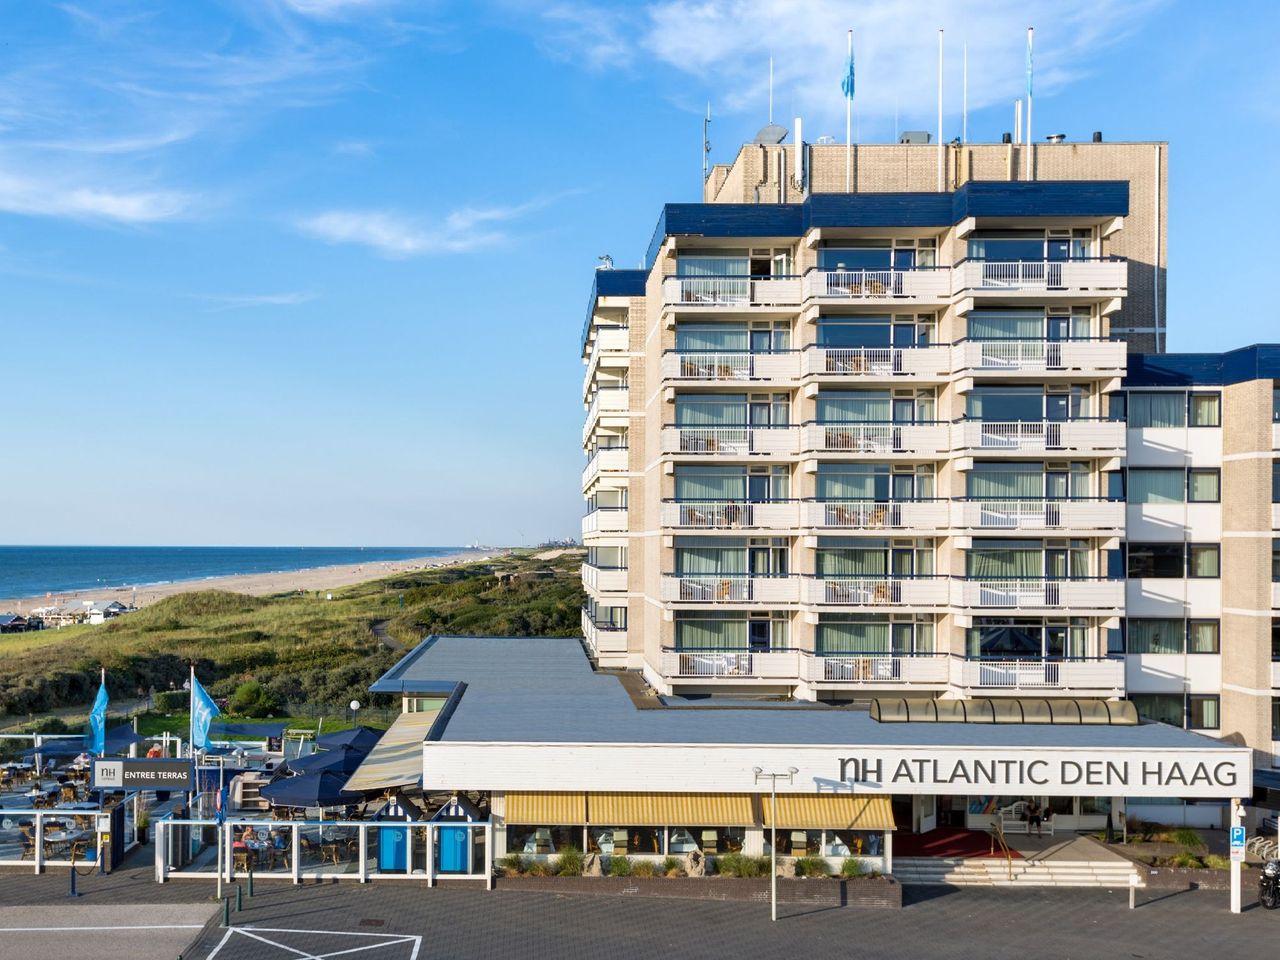 5 Tage im Hotel NH Atlantic Den Haag mit Frühstück